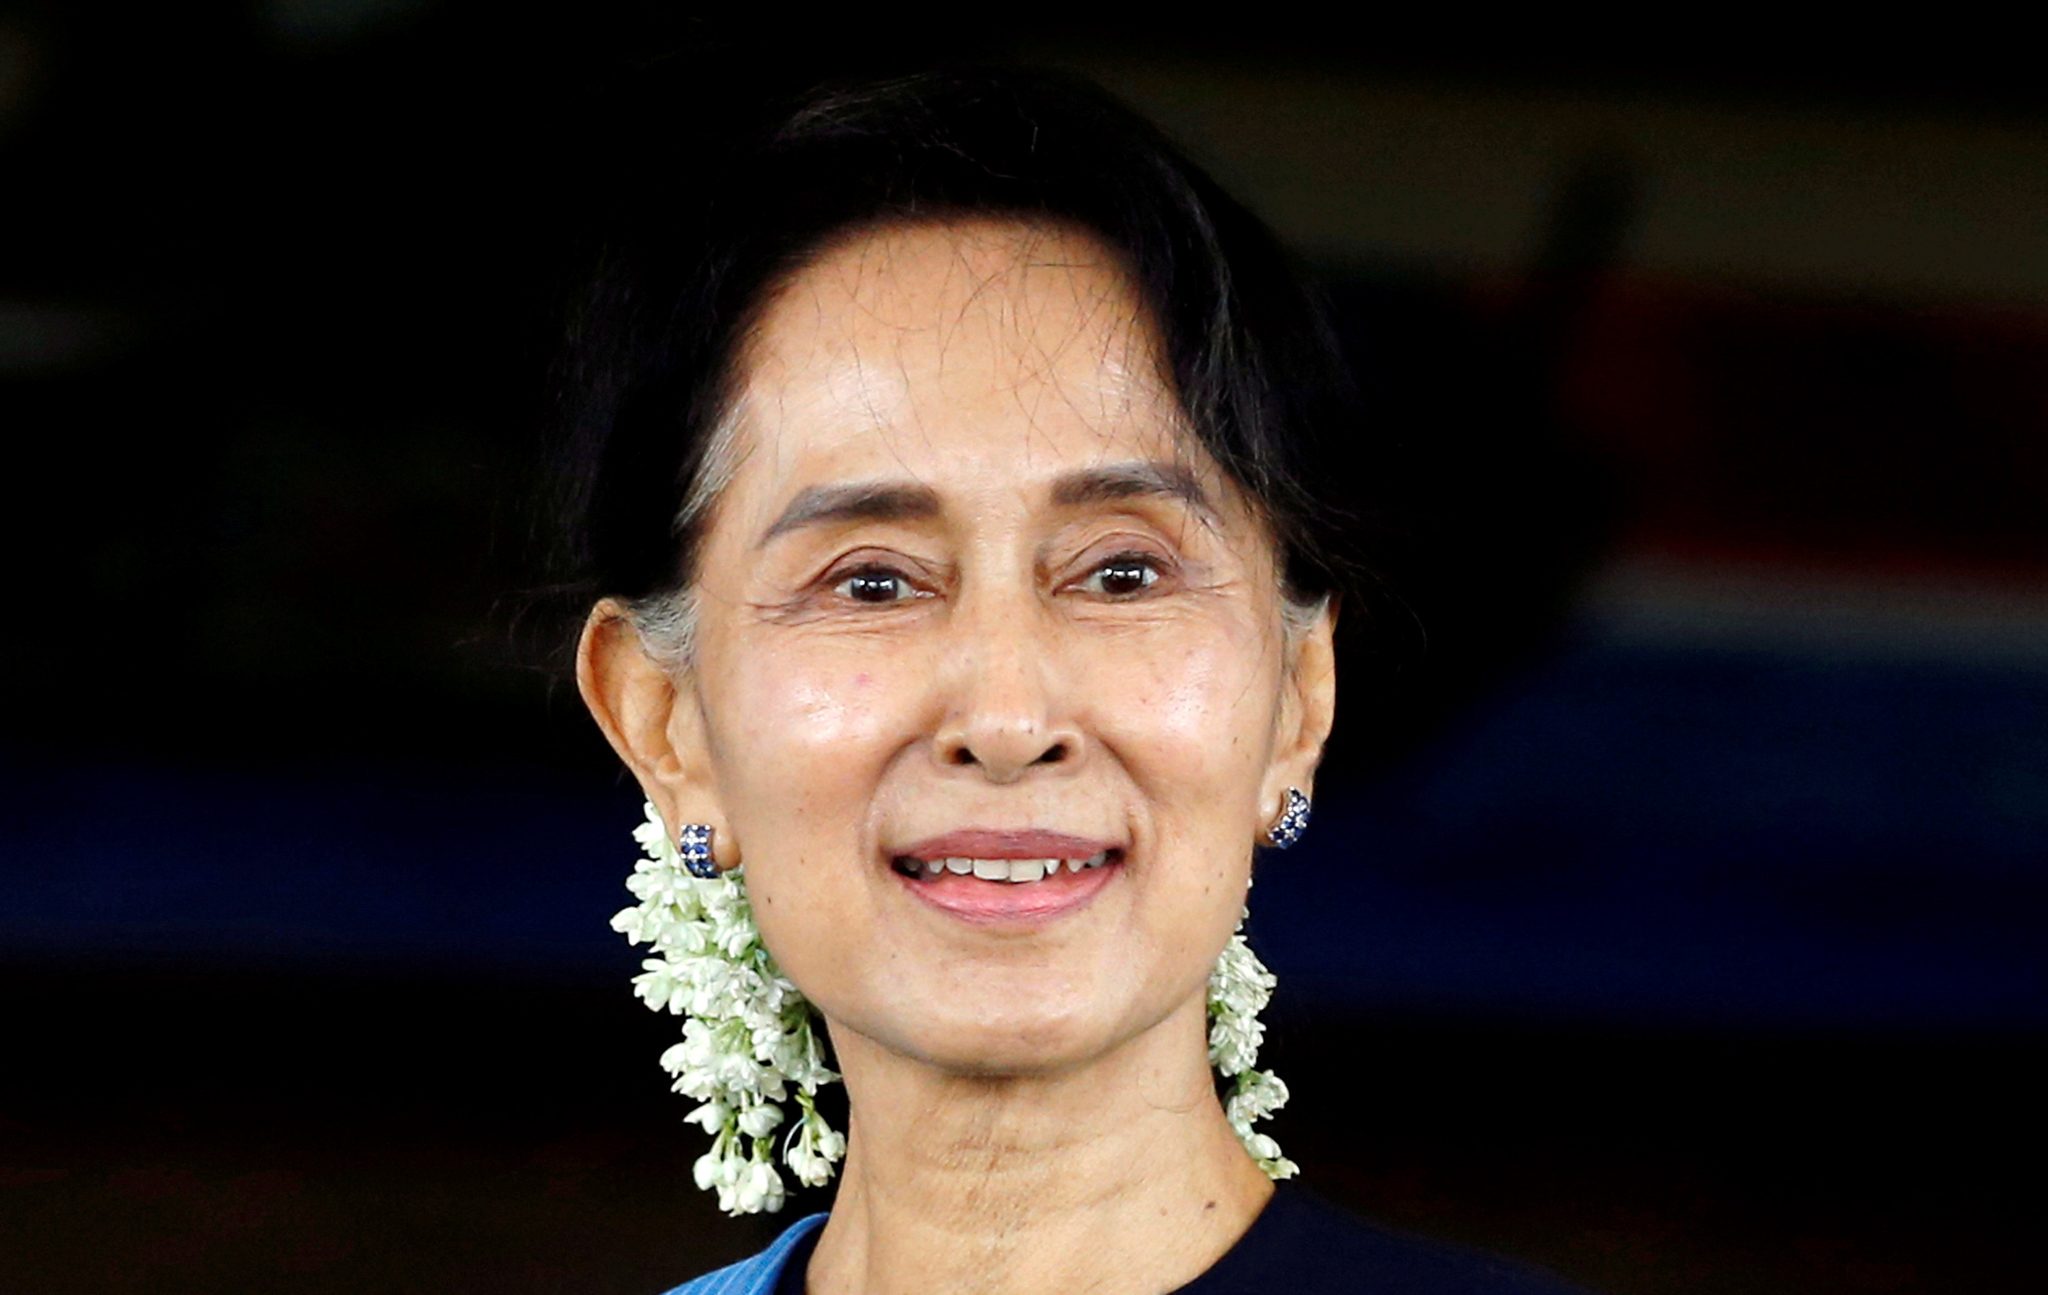 Myanmar defies international pressure, rejects Suu Kyi visit